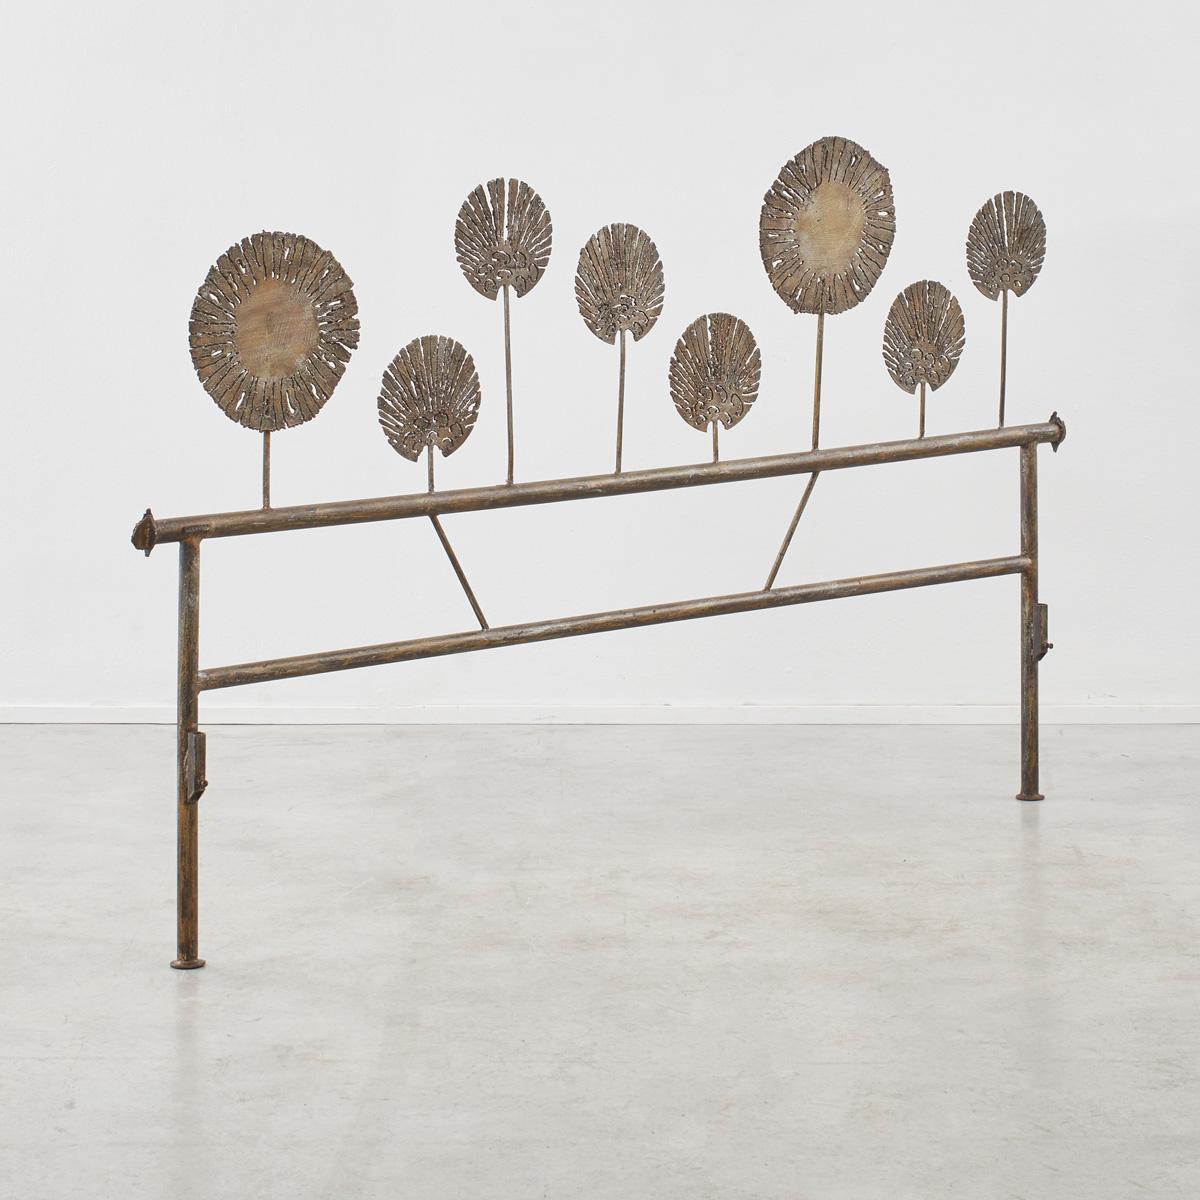 
Salvino Marsura wurde 1938 in Treviso geboren und erlernte sein Handwerk in der dynamischen Werkstatt des Bildhauers Toni Benetton. Seine Kunstwerke und Möbel aus Eisen erfreuen sich an der handwerklichen Ästhetik der Schmiede, indem sie dem rohen